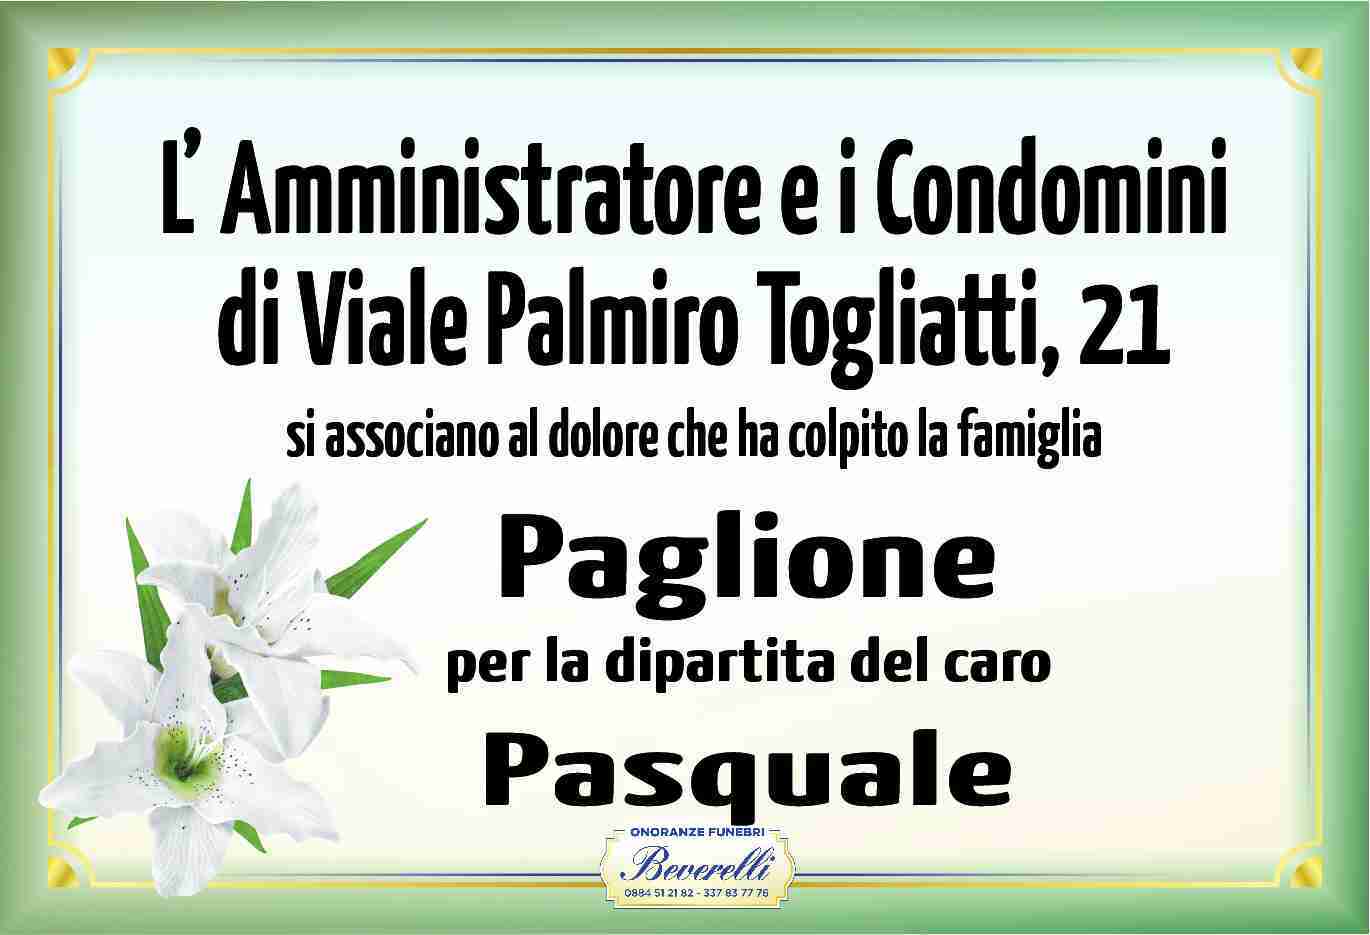 Pasquale Paglione